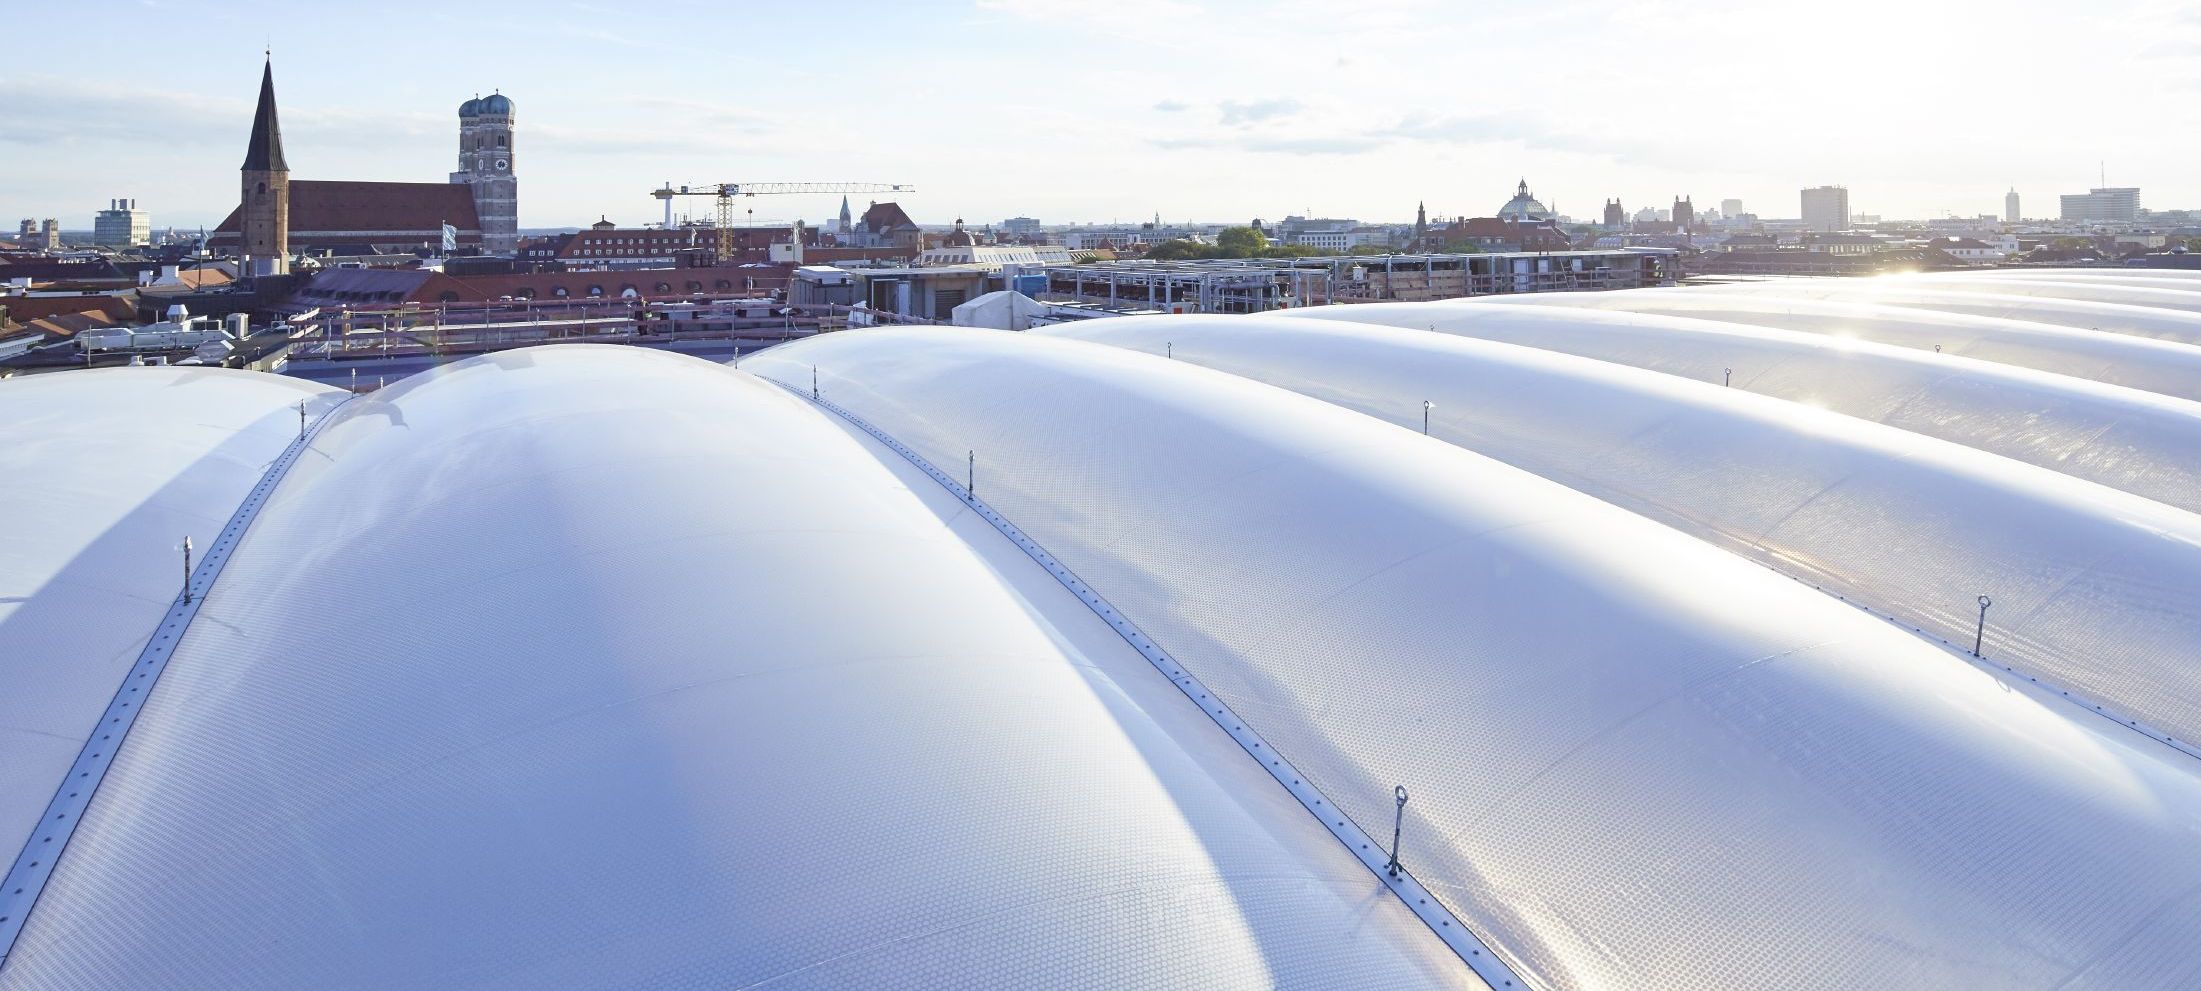 Siemens Headquarters Munich, ETFE foil cushion atrium roof four layer